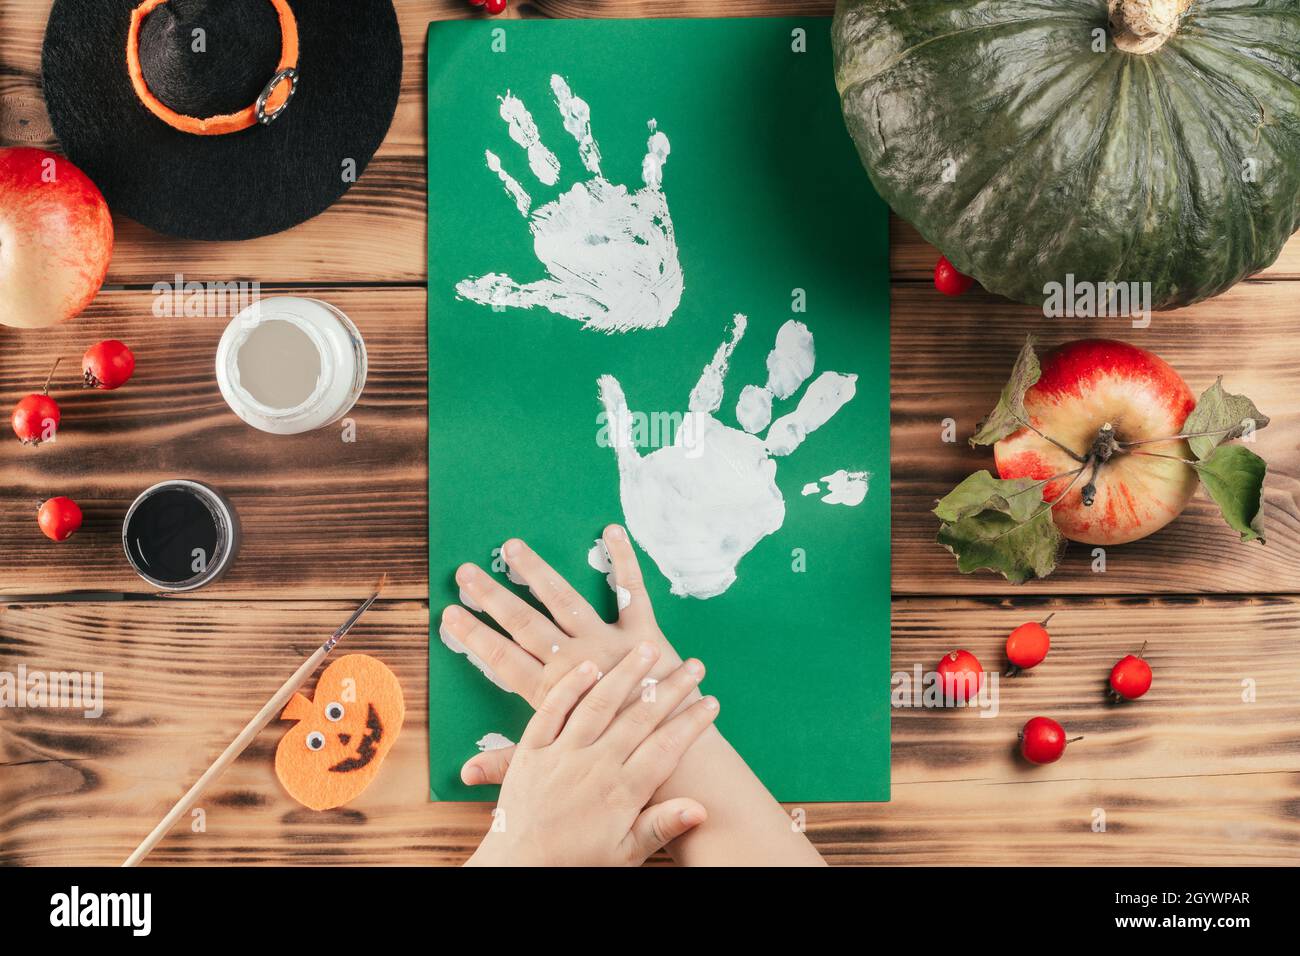 Schritt-für-Schritt Halloween Tutorial Geister Kinder Handprint. Schritt 6: Das Kind hinterlässt einen Handflächendruck auf einem farbigen Papier. Draufsicht Stockfoto